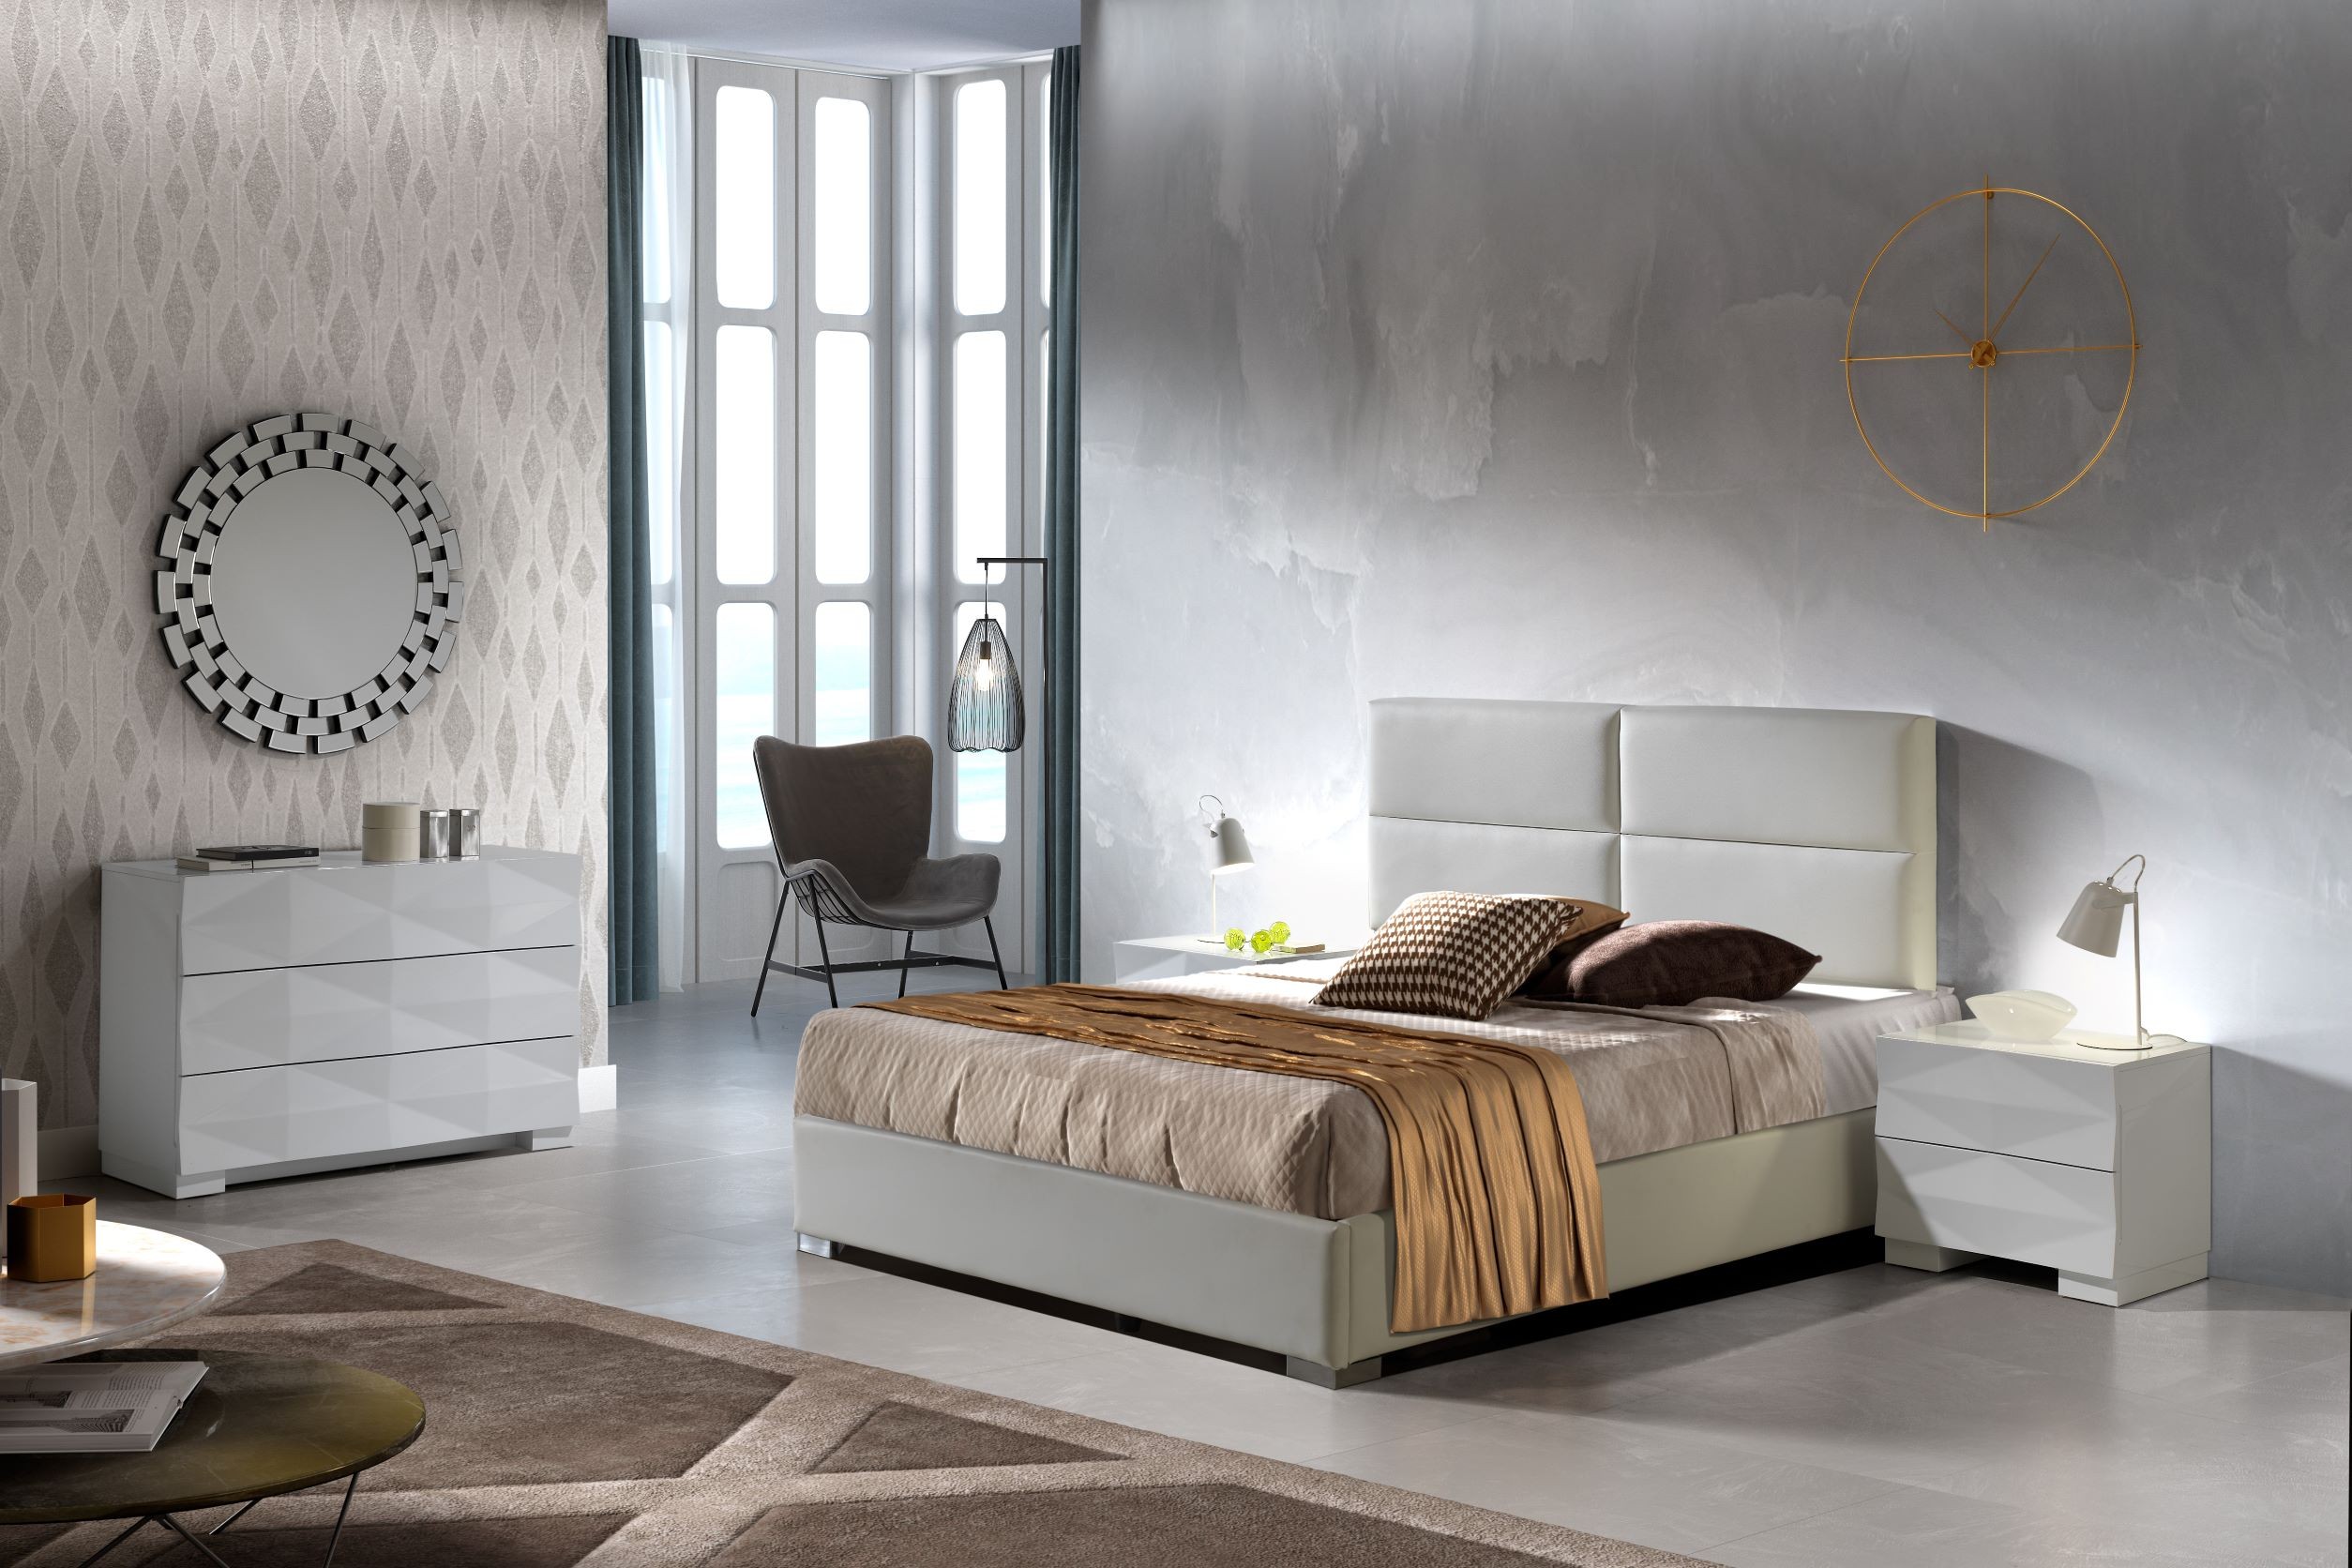 Estila Moderní luxusní manželská postel Sara s čalouněním z ekokůže a s úložným prostorem 140-180cm